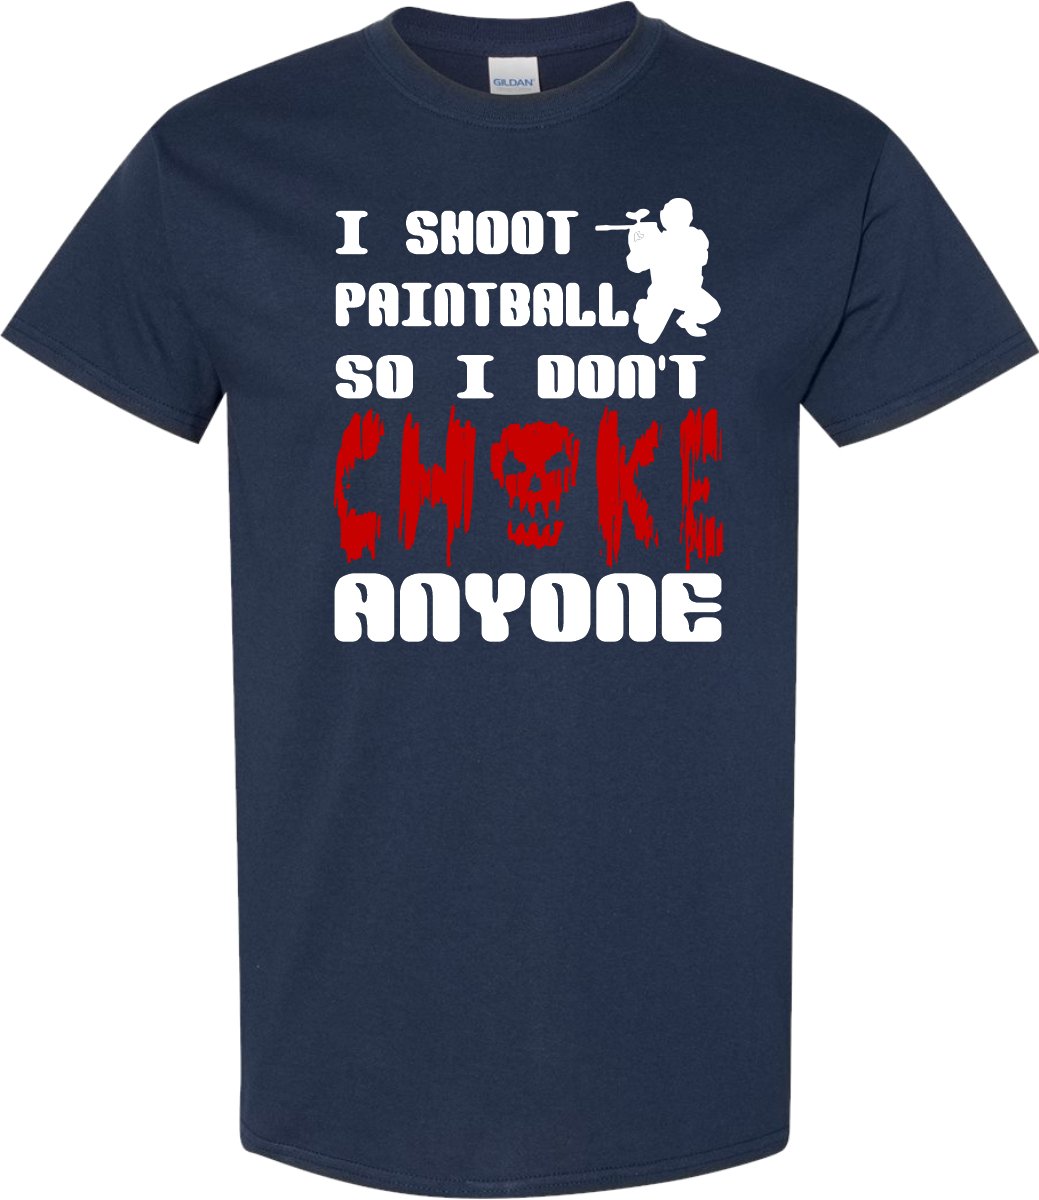 I Shoot Paintball so I don't CHOKE Anyone T shirt - SBS T Shop